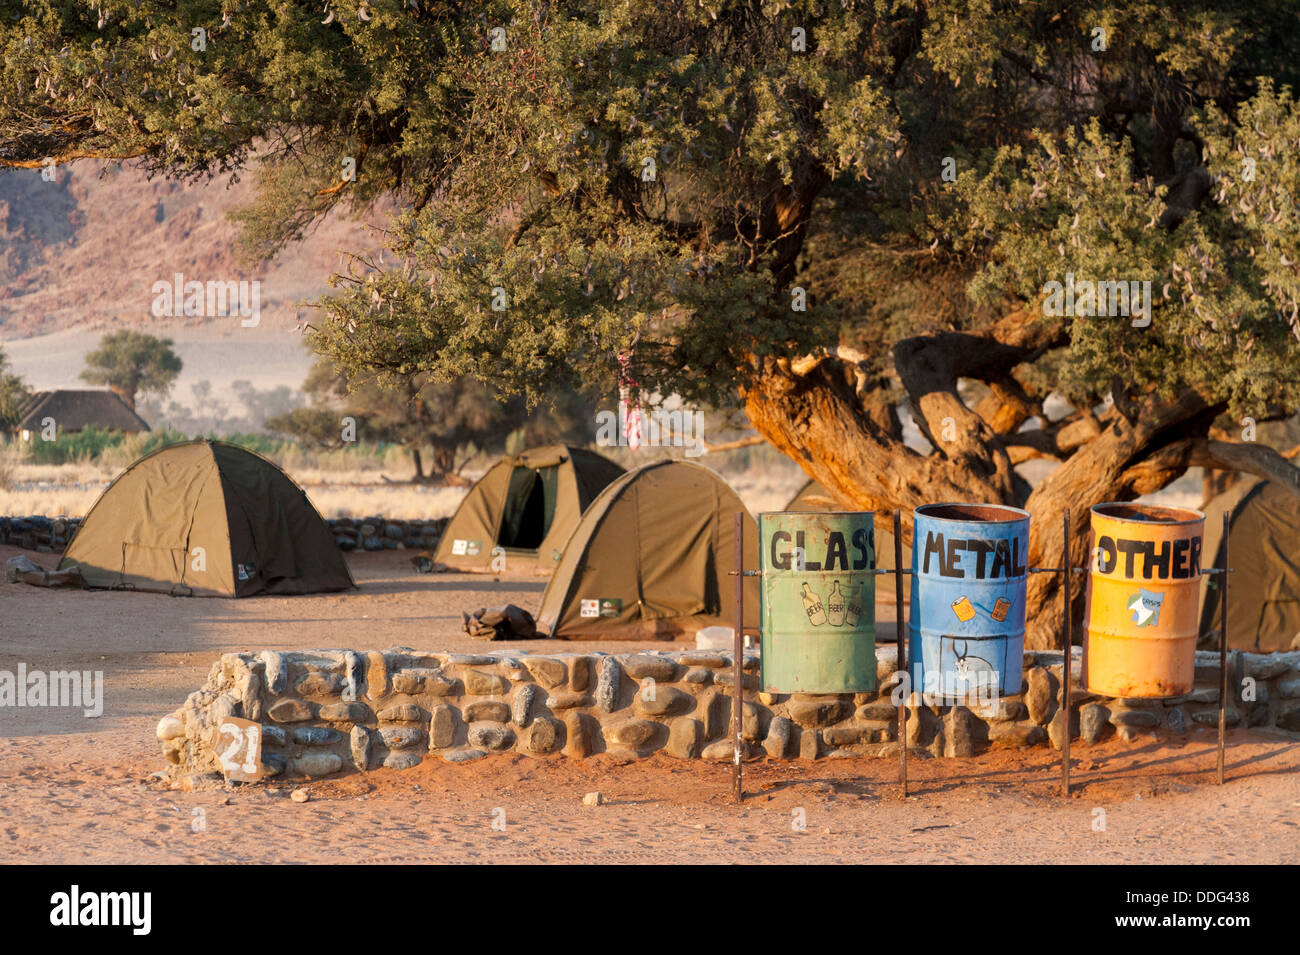 Les bacs de recyclage pour le verre, le métal et autres matériaux et tentes au camping de Sesriem, Namibie, région Khomas Banque D'Images